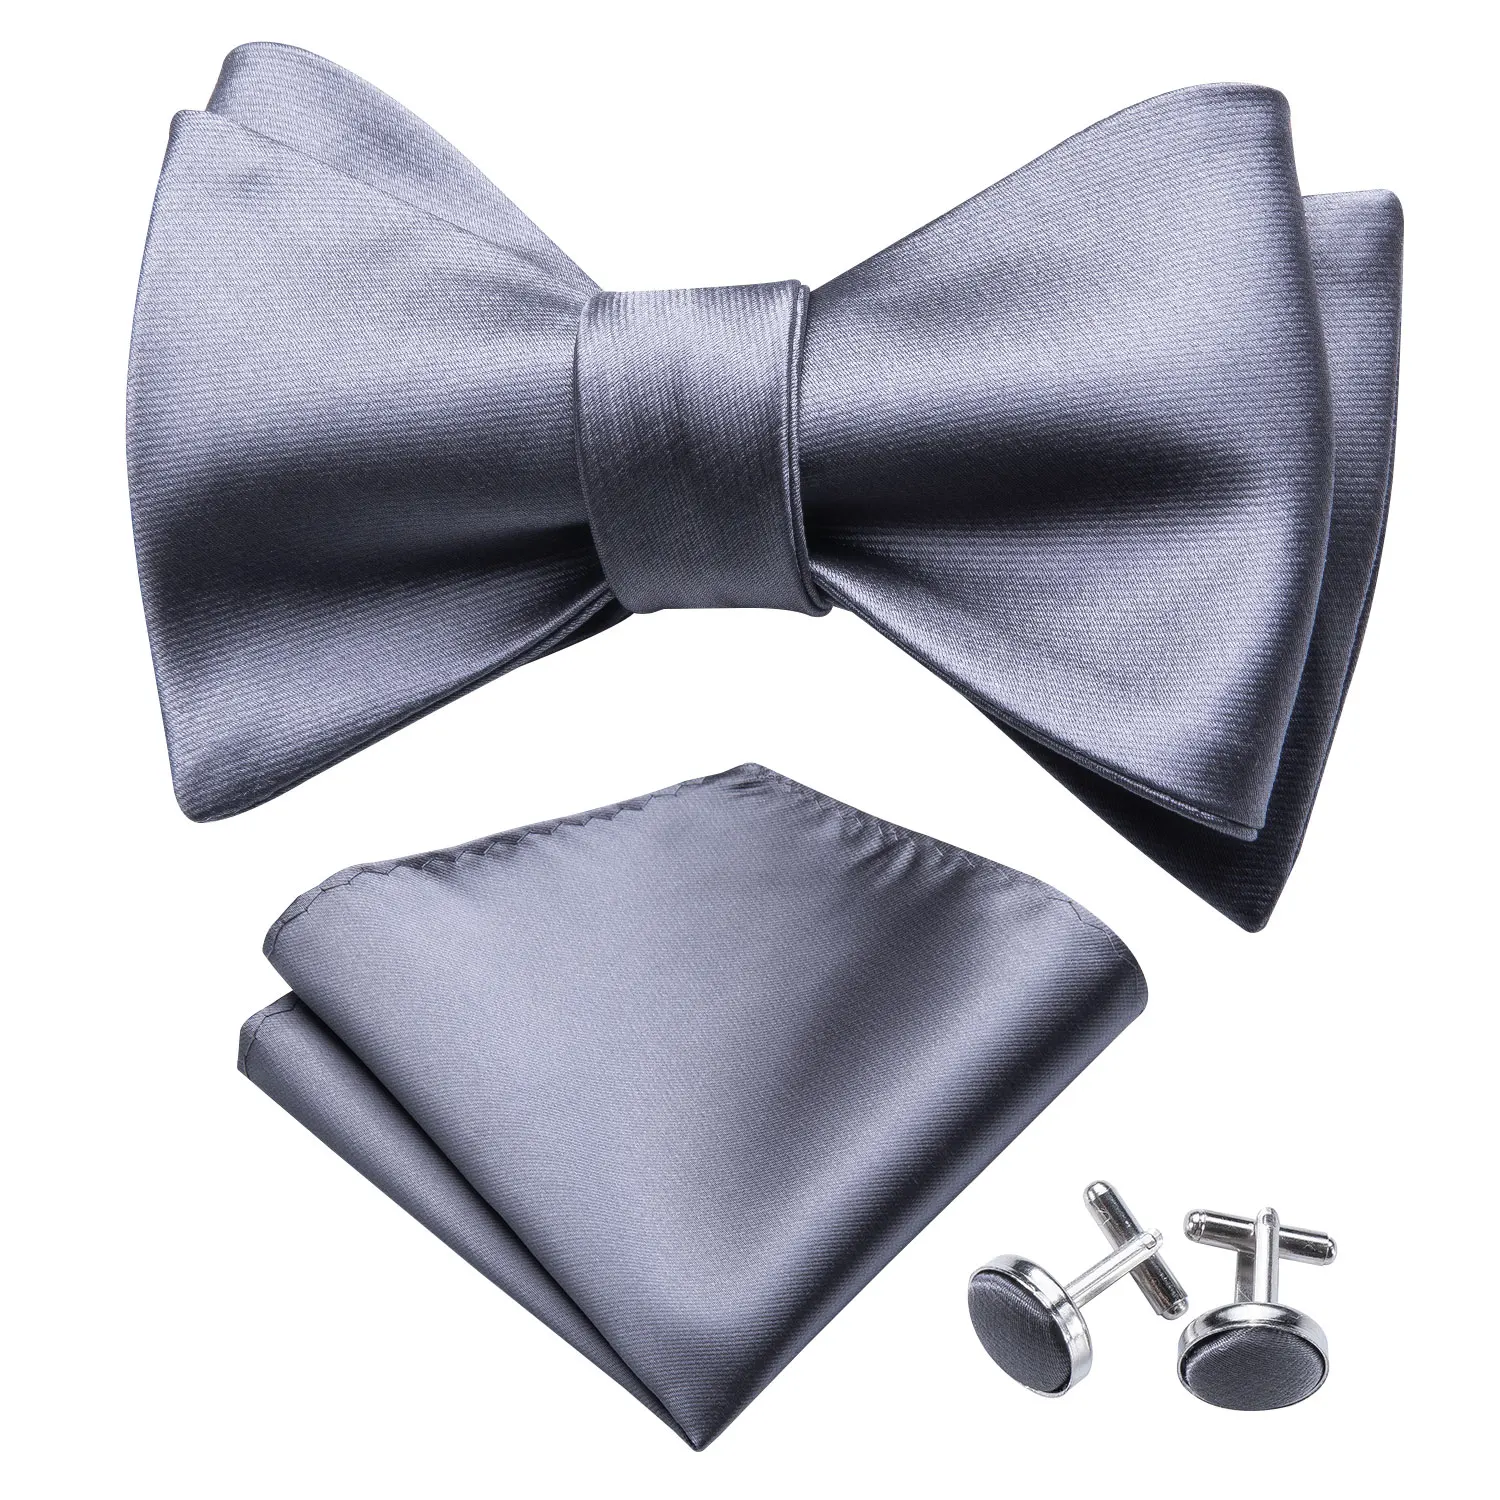 Самостоятельно регулируемый галстук-бабочка для мужчин Шелковый бабочка мужской галстук серый дизайнерский Свадебный Hanky запонки для костюма воротник съемный галстук Барри. WangLH-1025